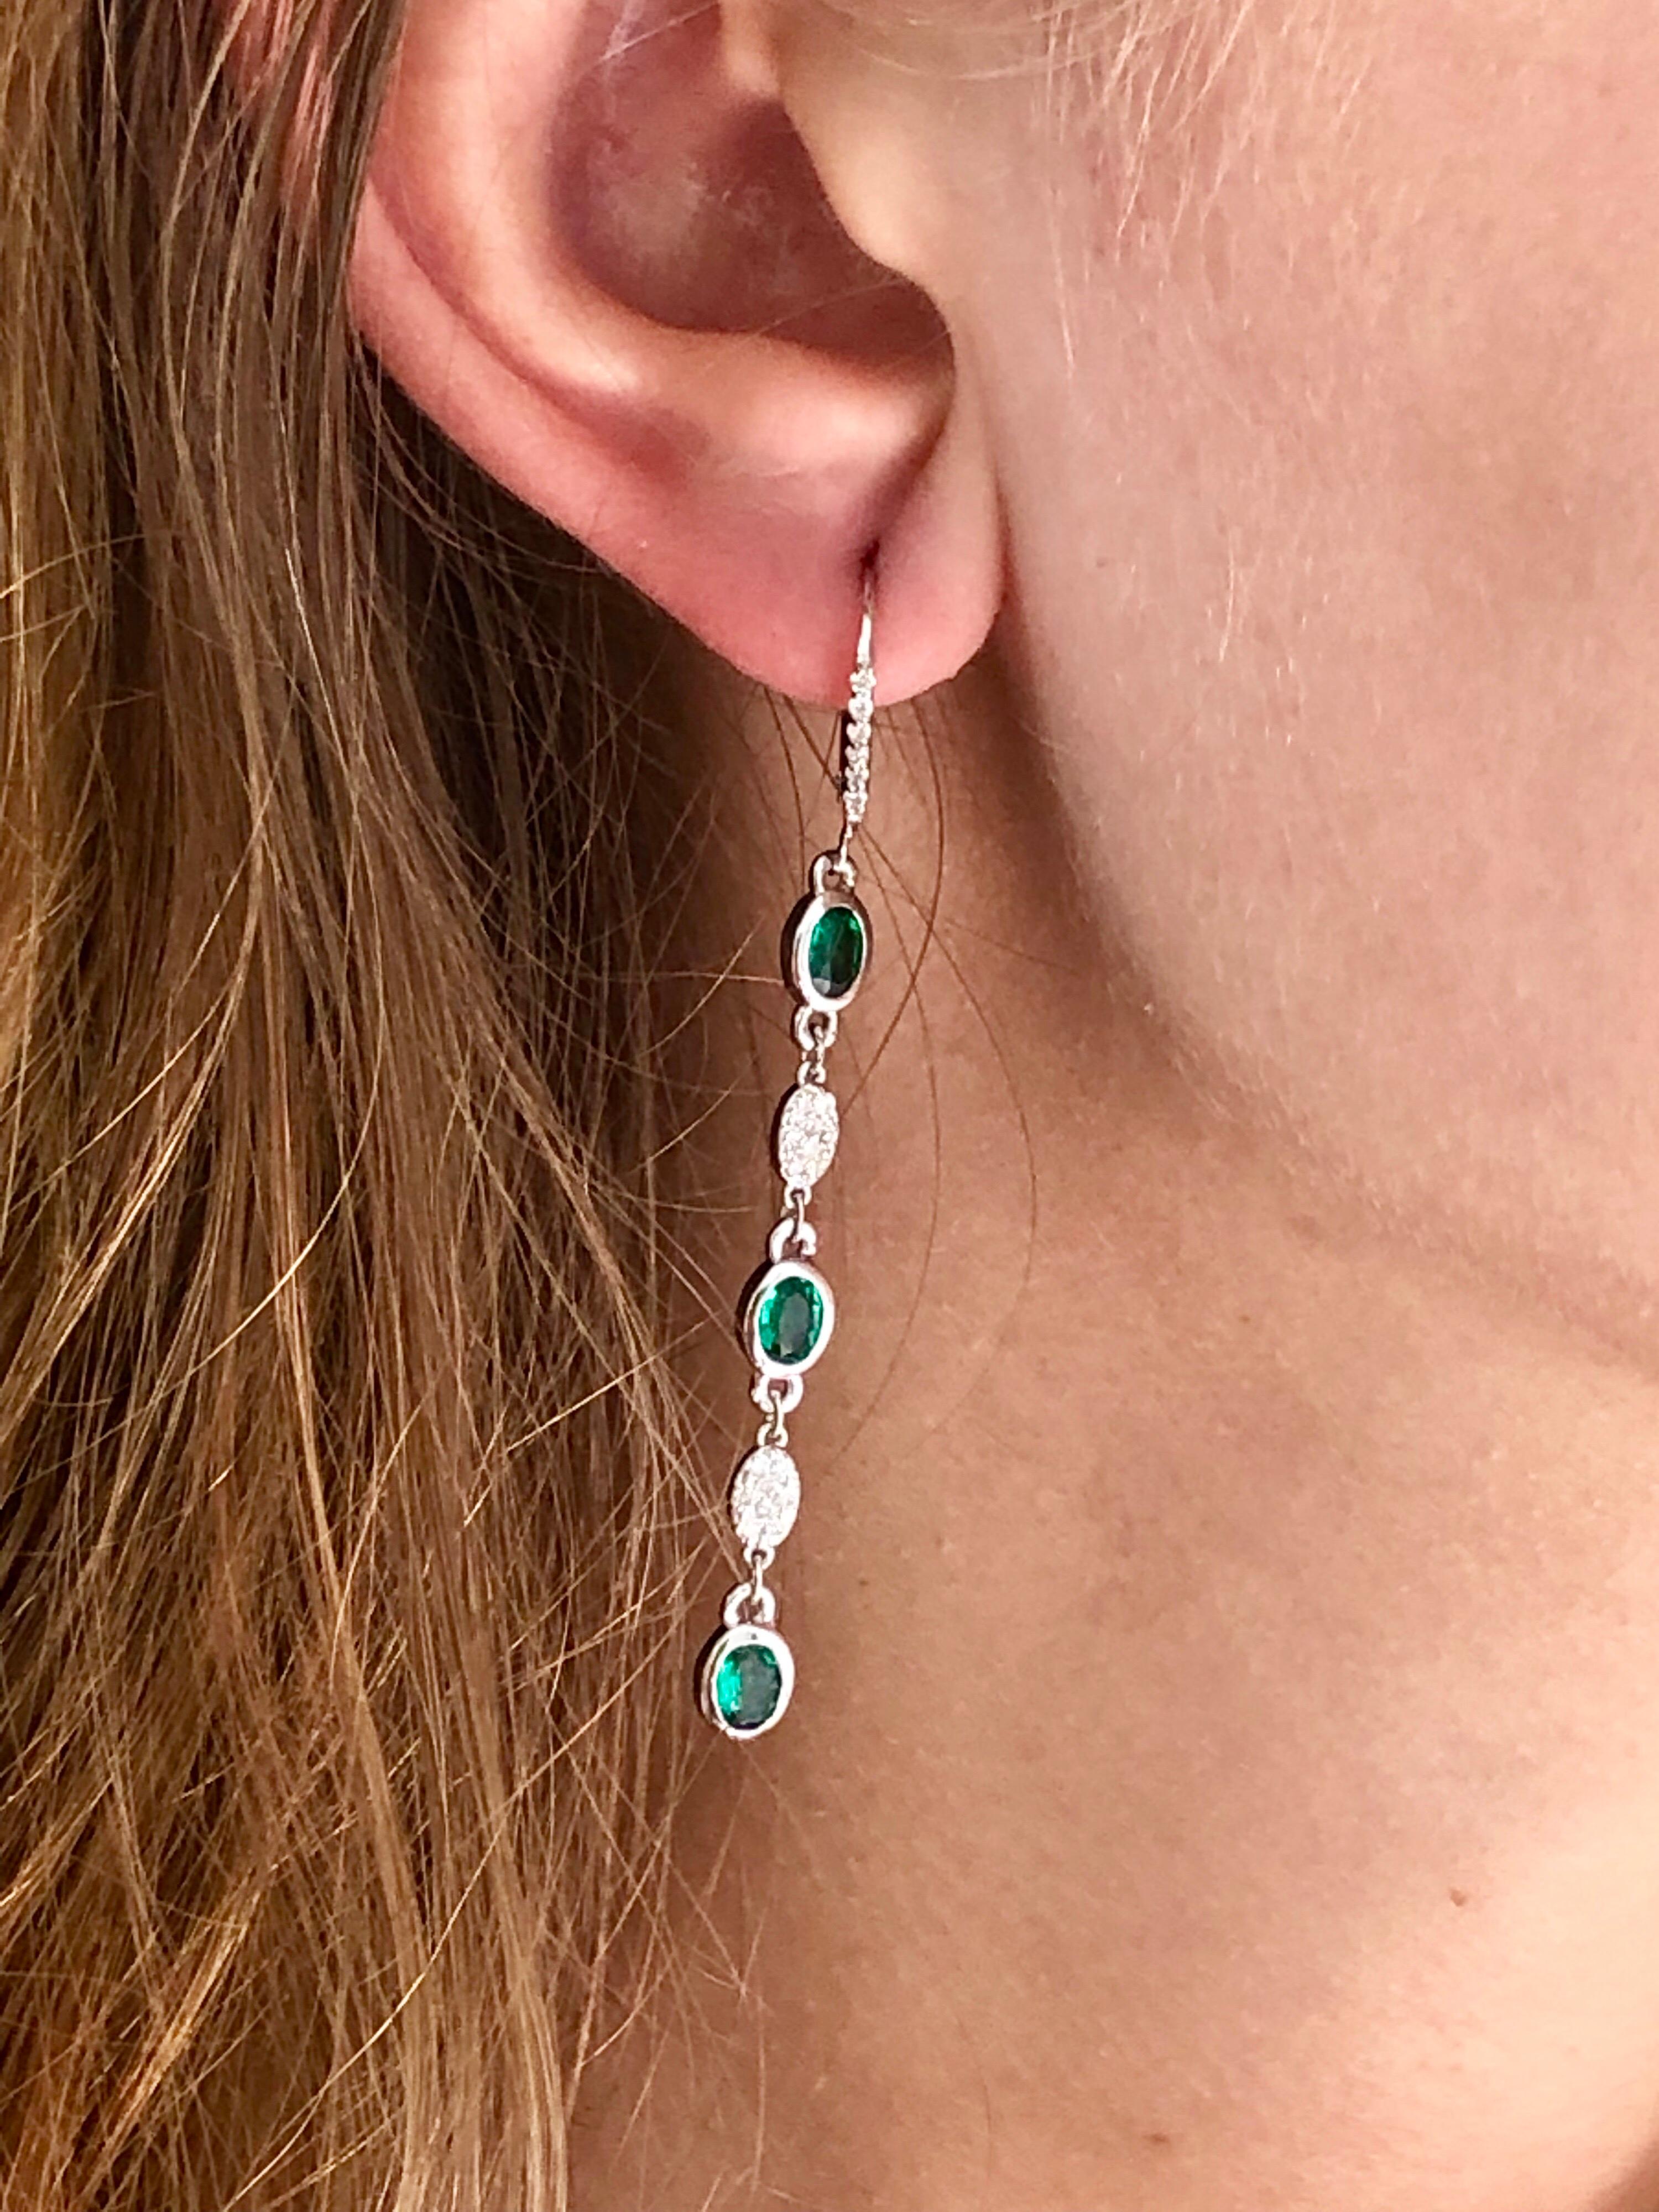 Emerald Cut Emerald and Diamond Bezel Set Hoop Earrings Weighing 2.40 Carat